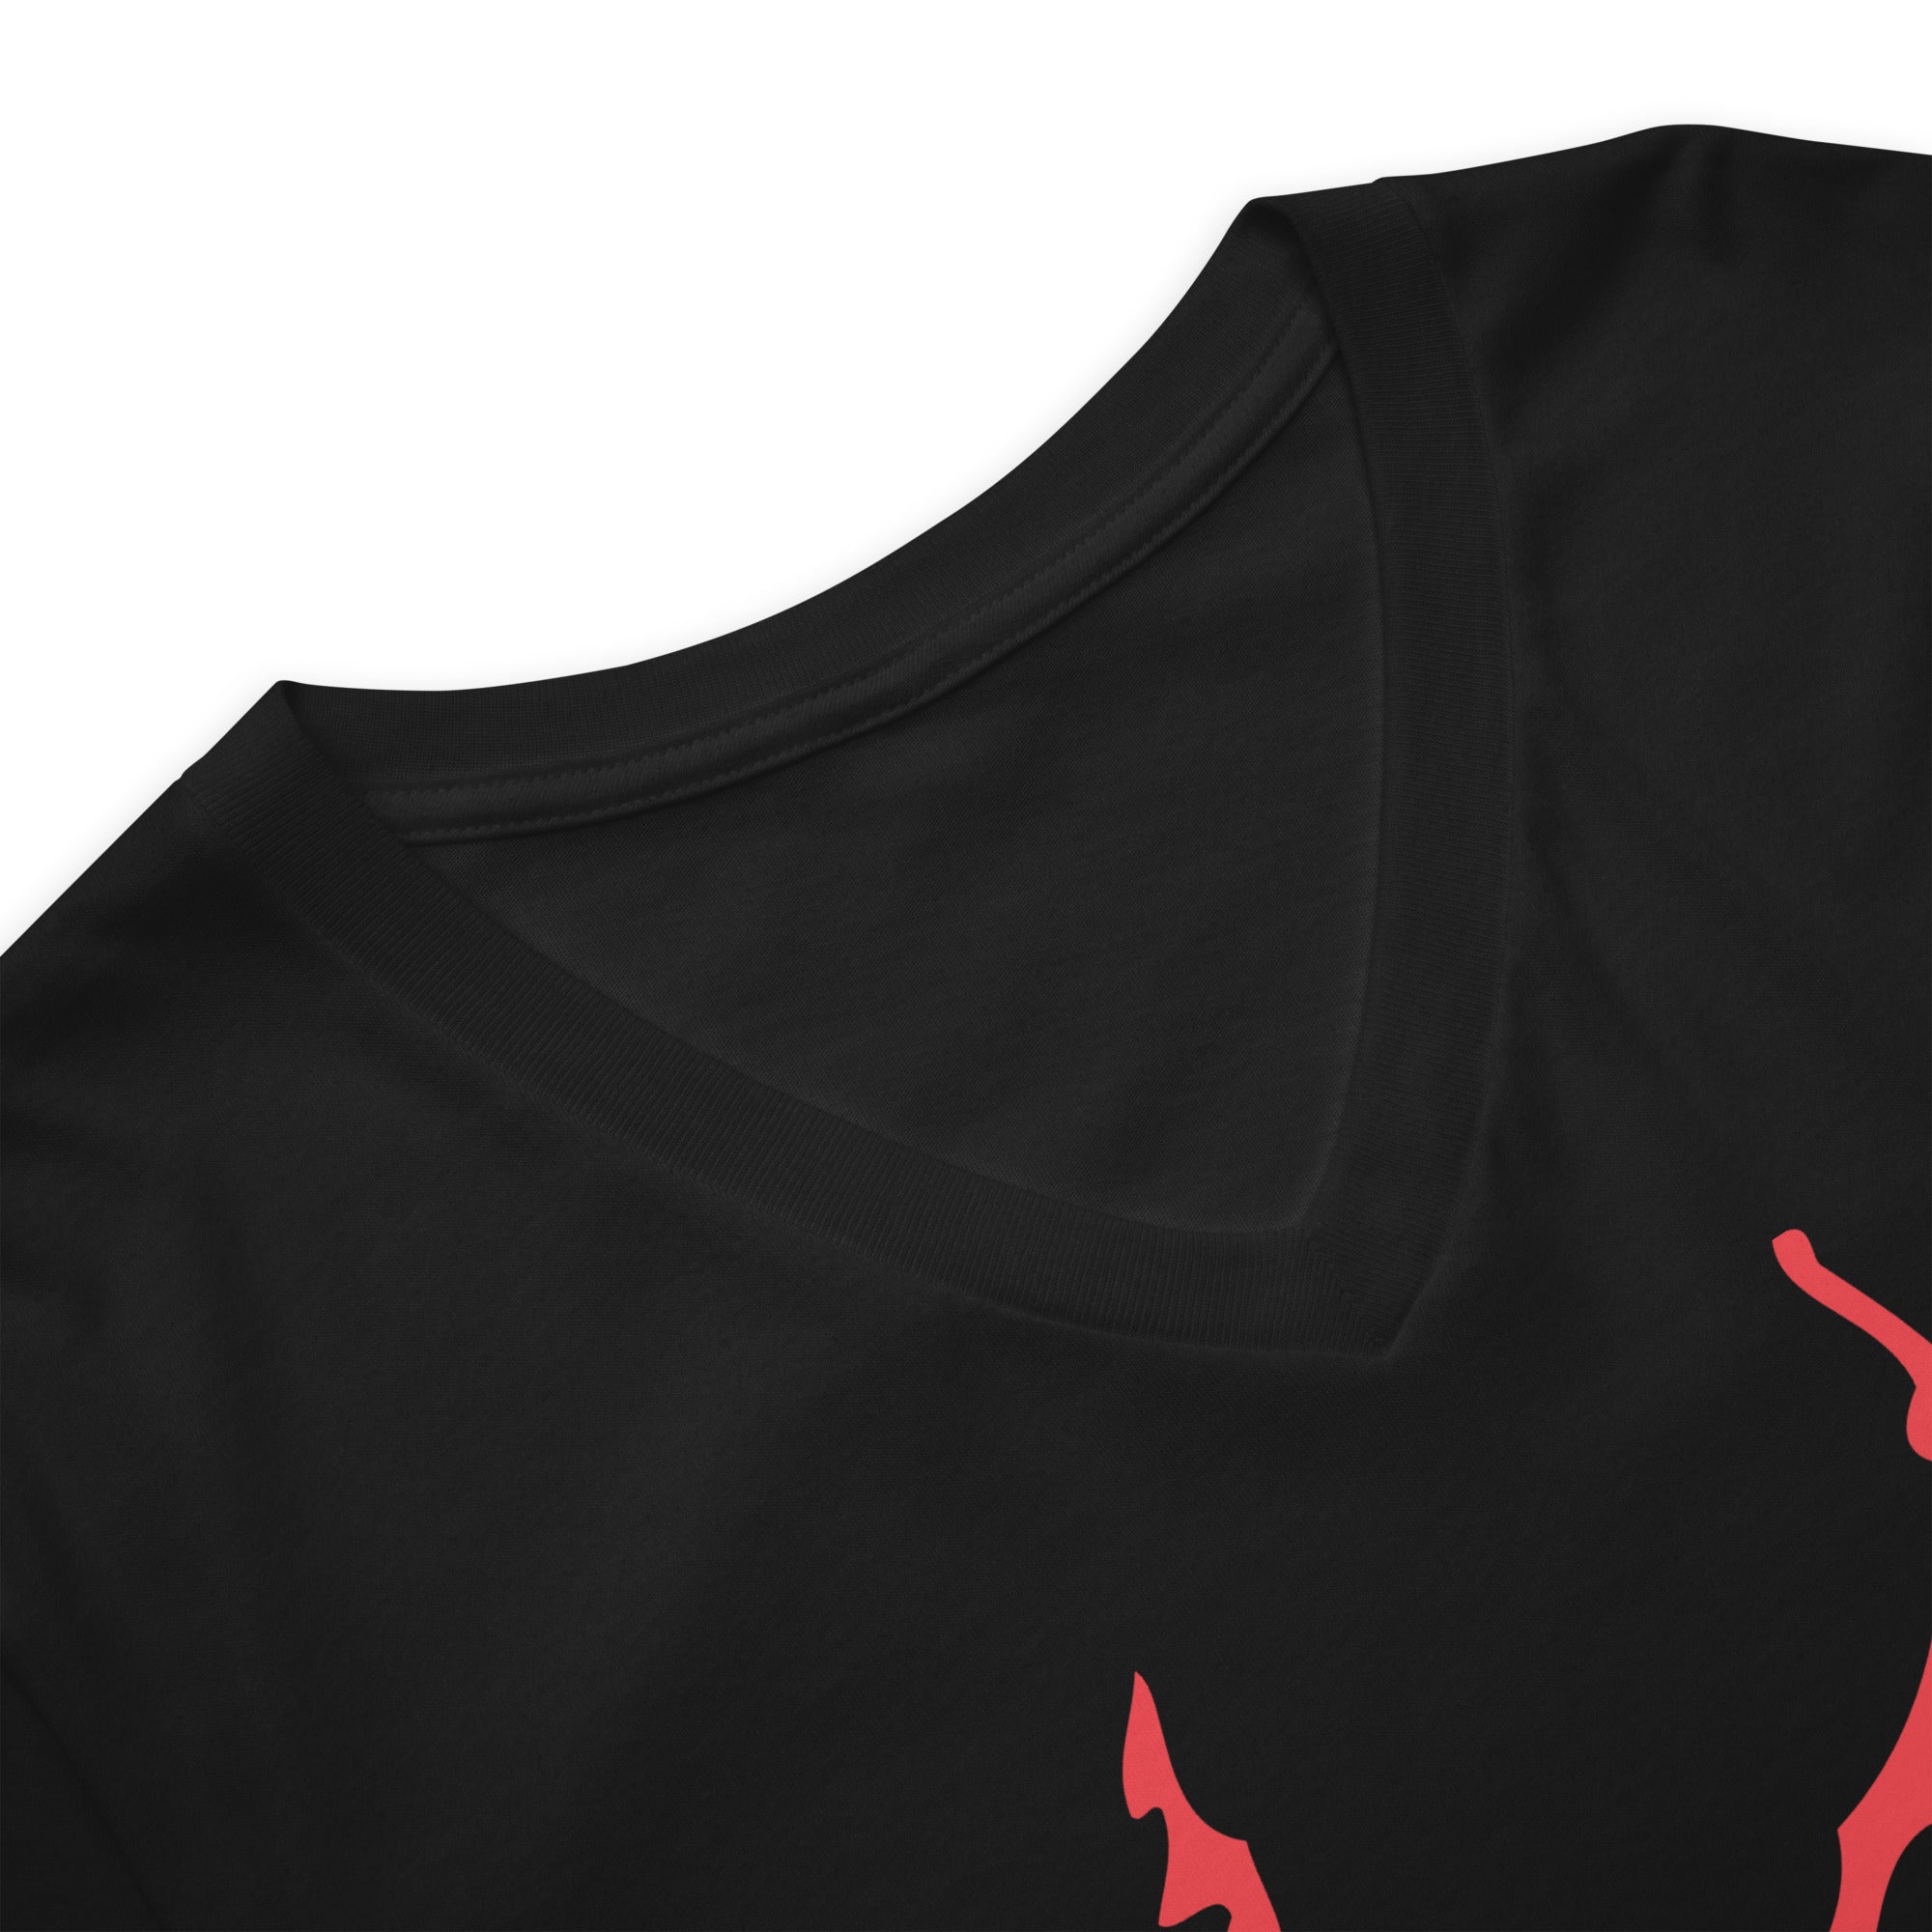 Red Melting Inverted Pentagram Black Metal Style Women’s Short Sleeve V-Neck T-Shirt